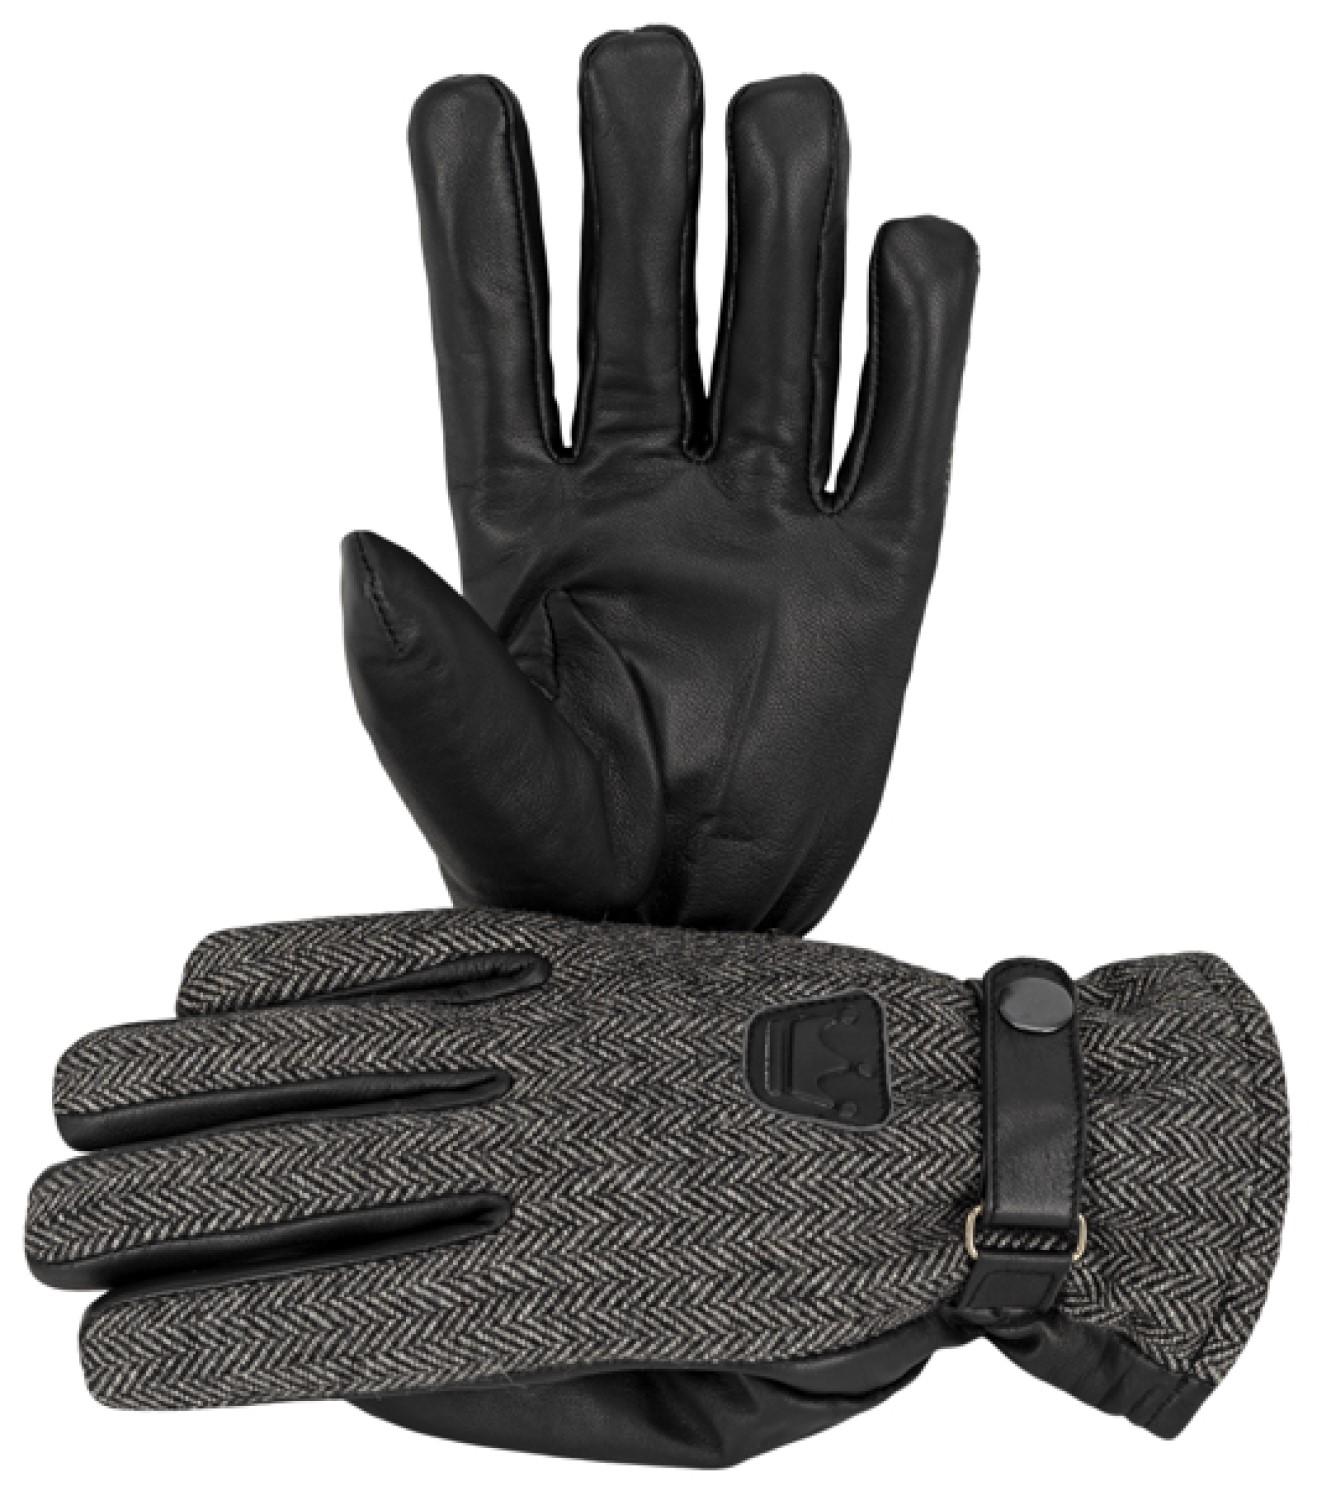 Balke warme Handschuhe mit Echtleder & Fischgrät-Muster von Balke